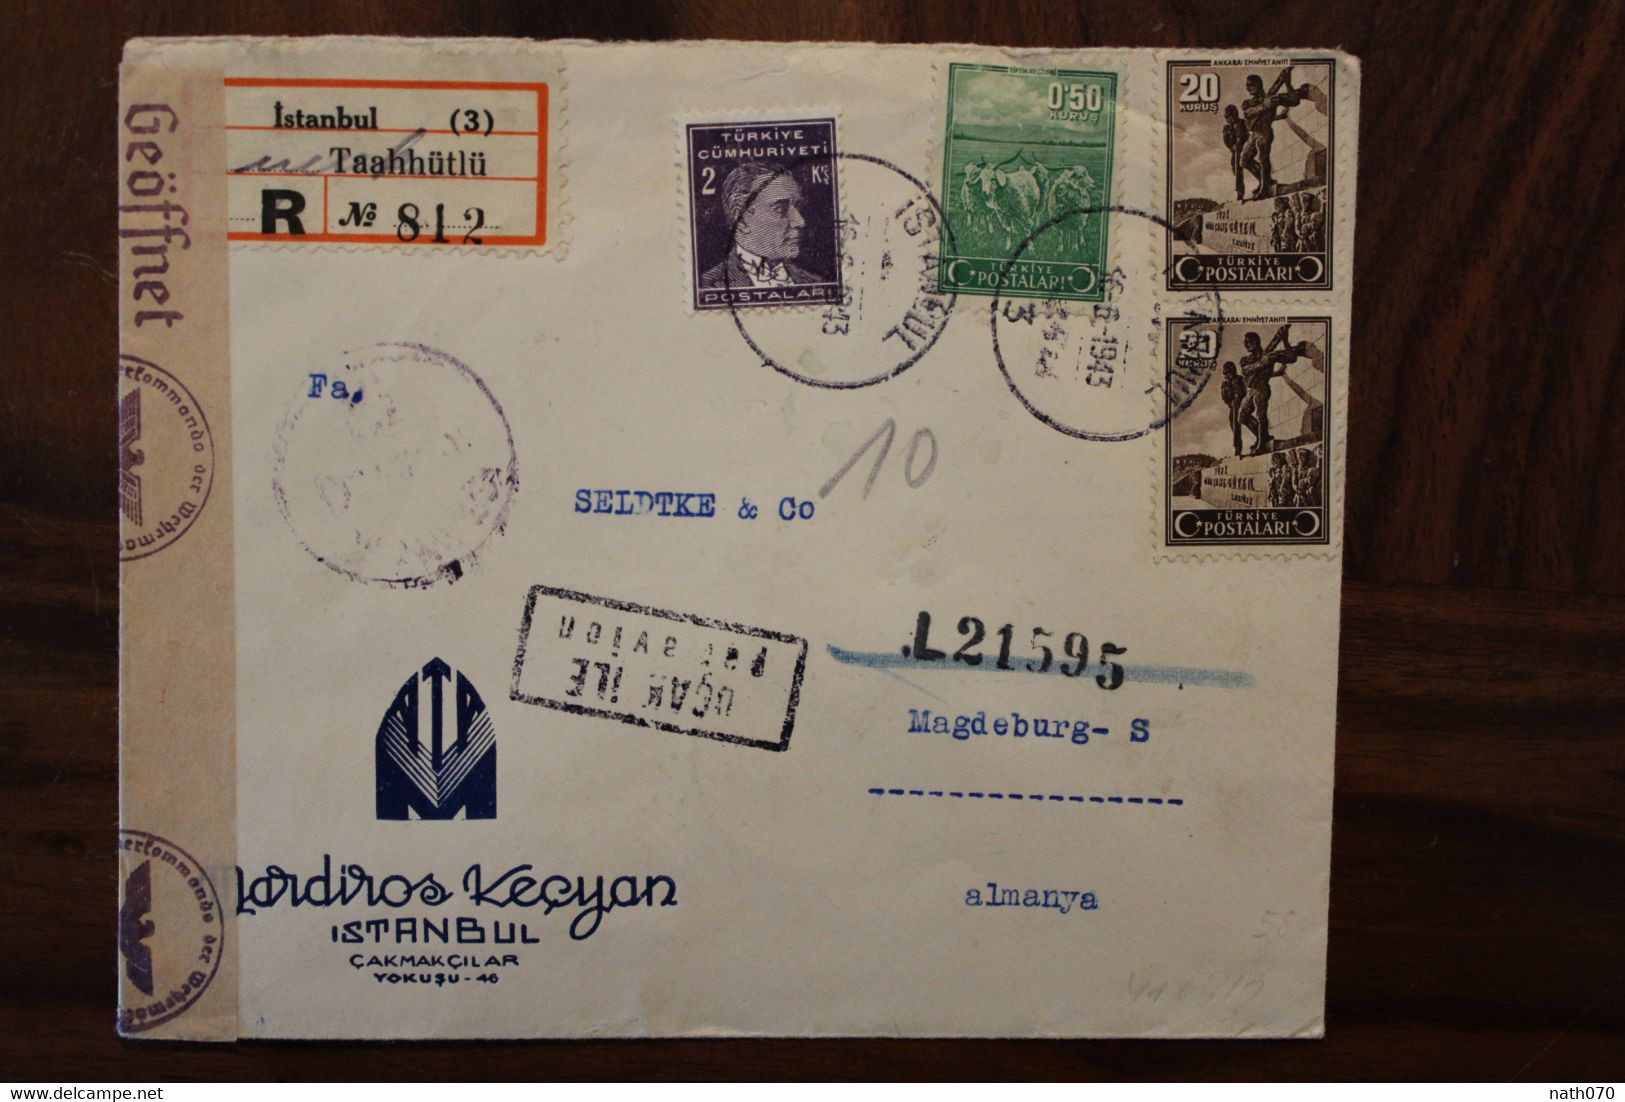 Turquie 1943 OKW Censure Türkei Air Mail Cover Enveloppe Paire Par Avion Allemagne Turkey Türkiye Ww2 Wk2 - Storia Postale